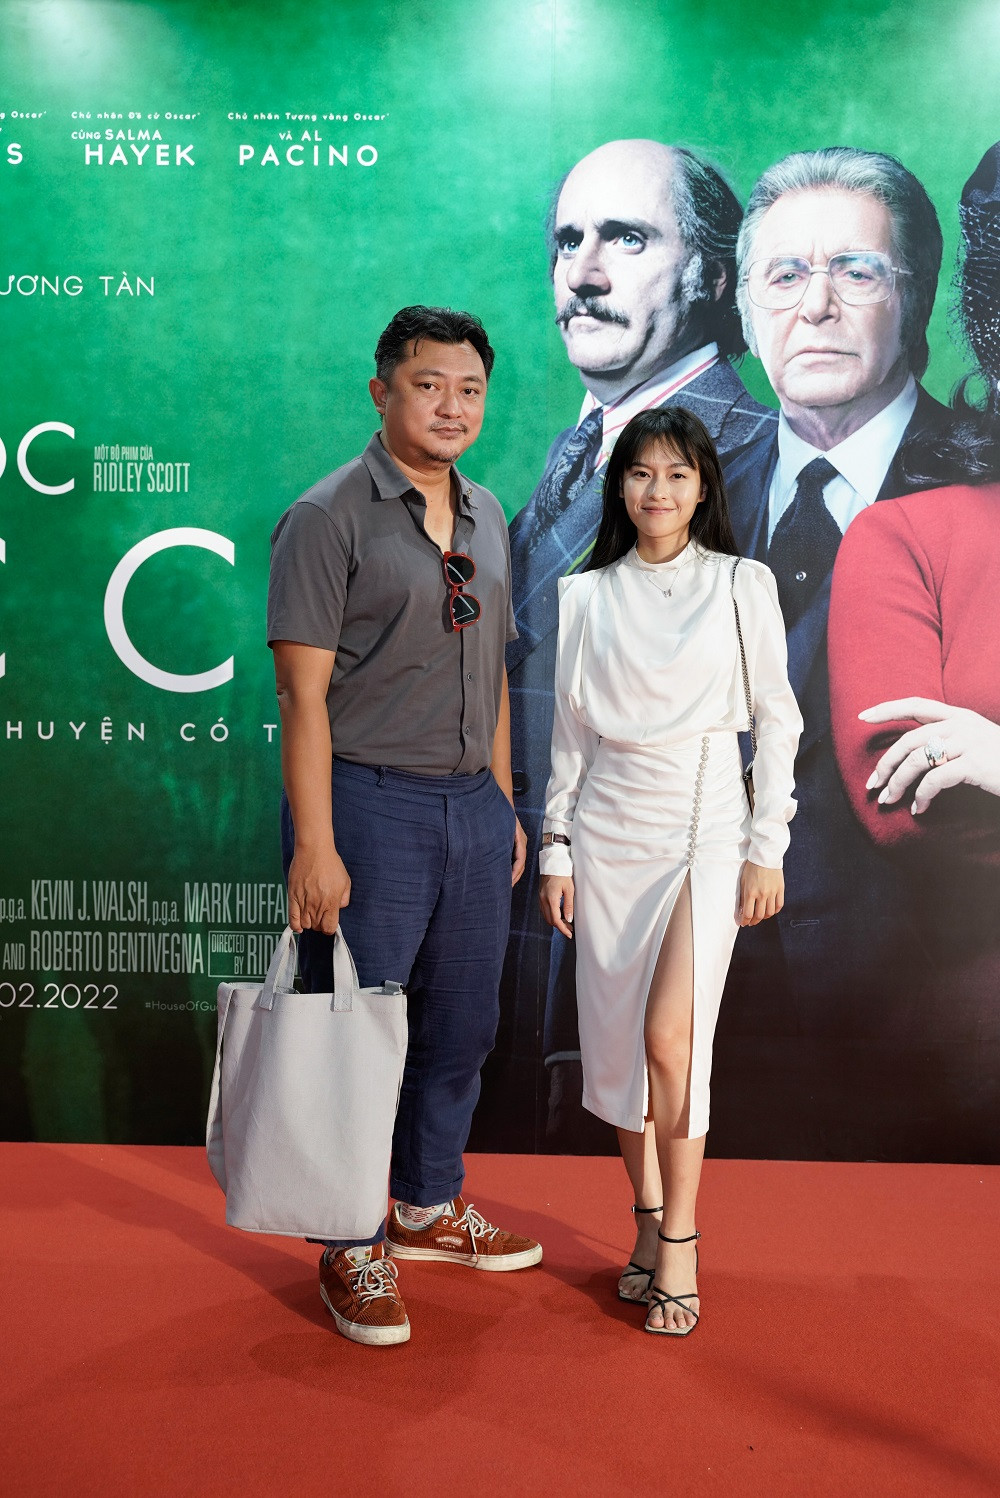 Dàn sao Việt lên đồ 'cực gắt' tại buổi công chiếu phim Gia tộc Gucci - ảnh 5